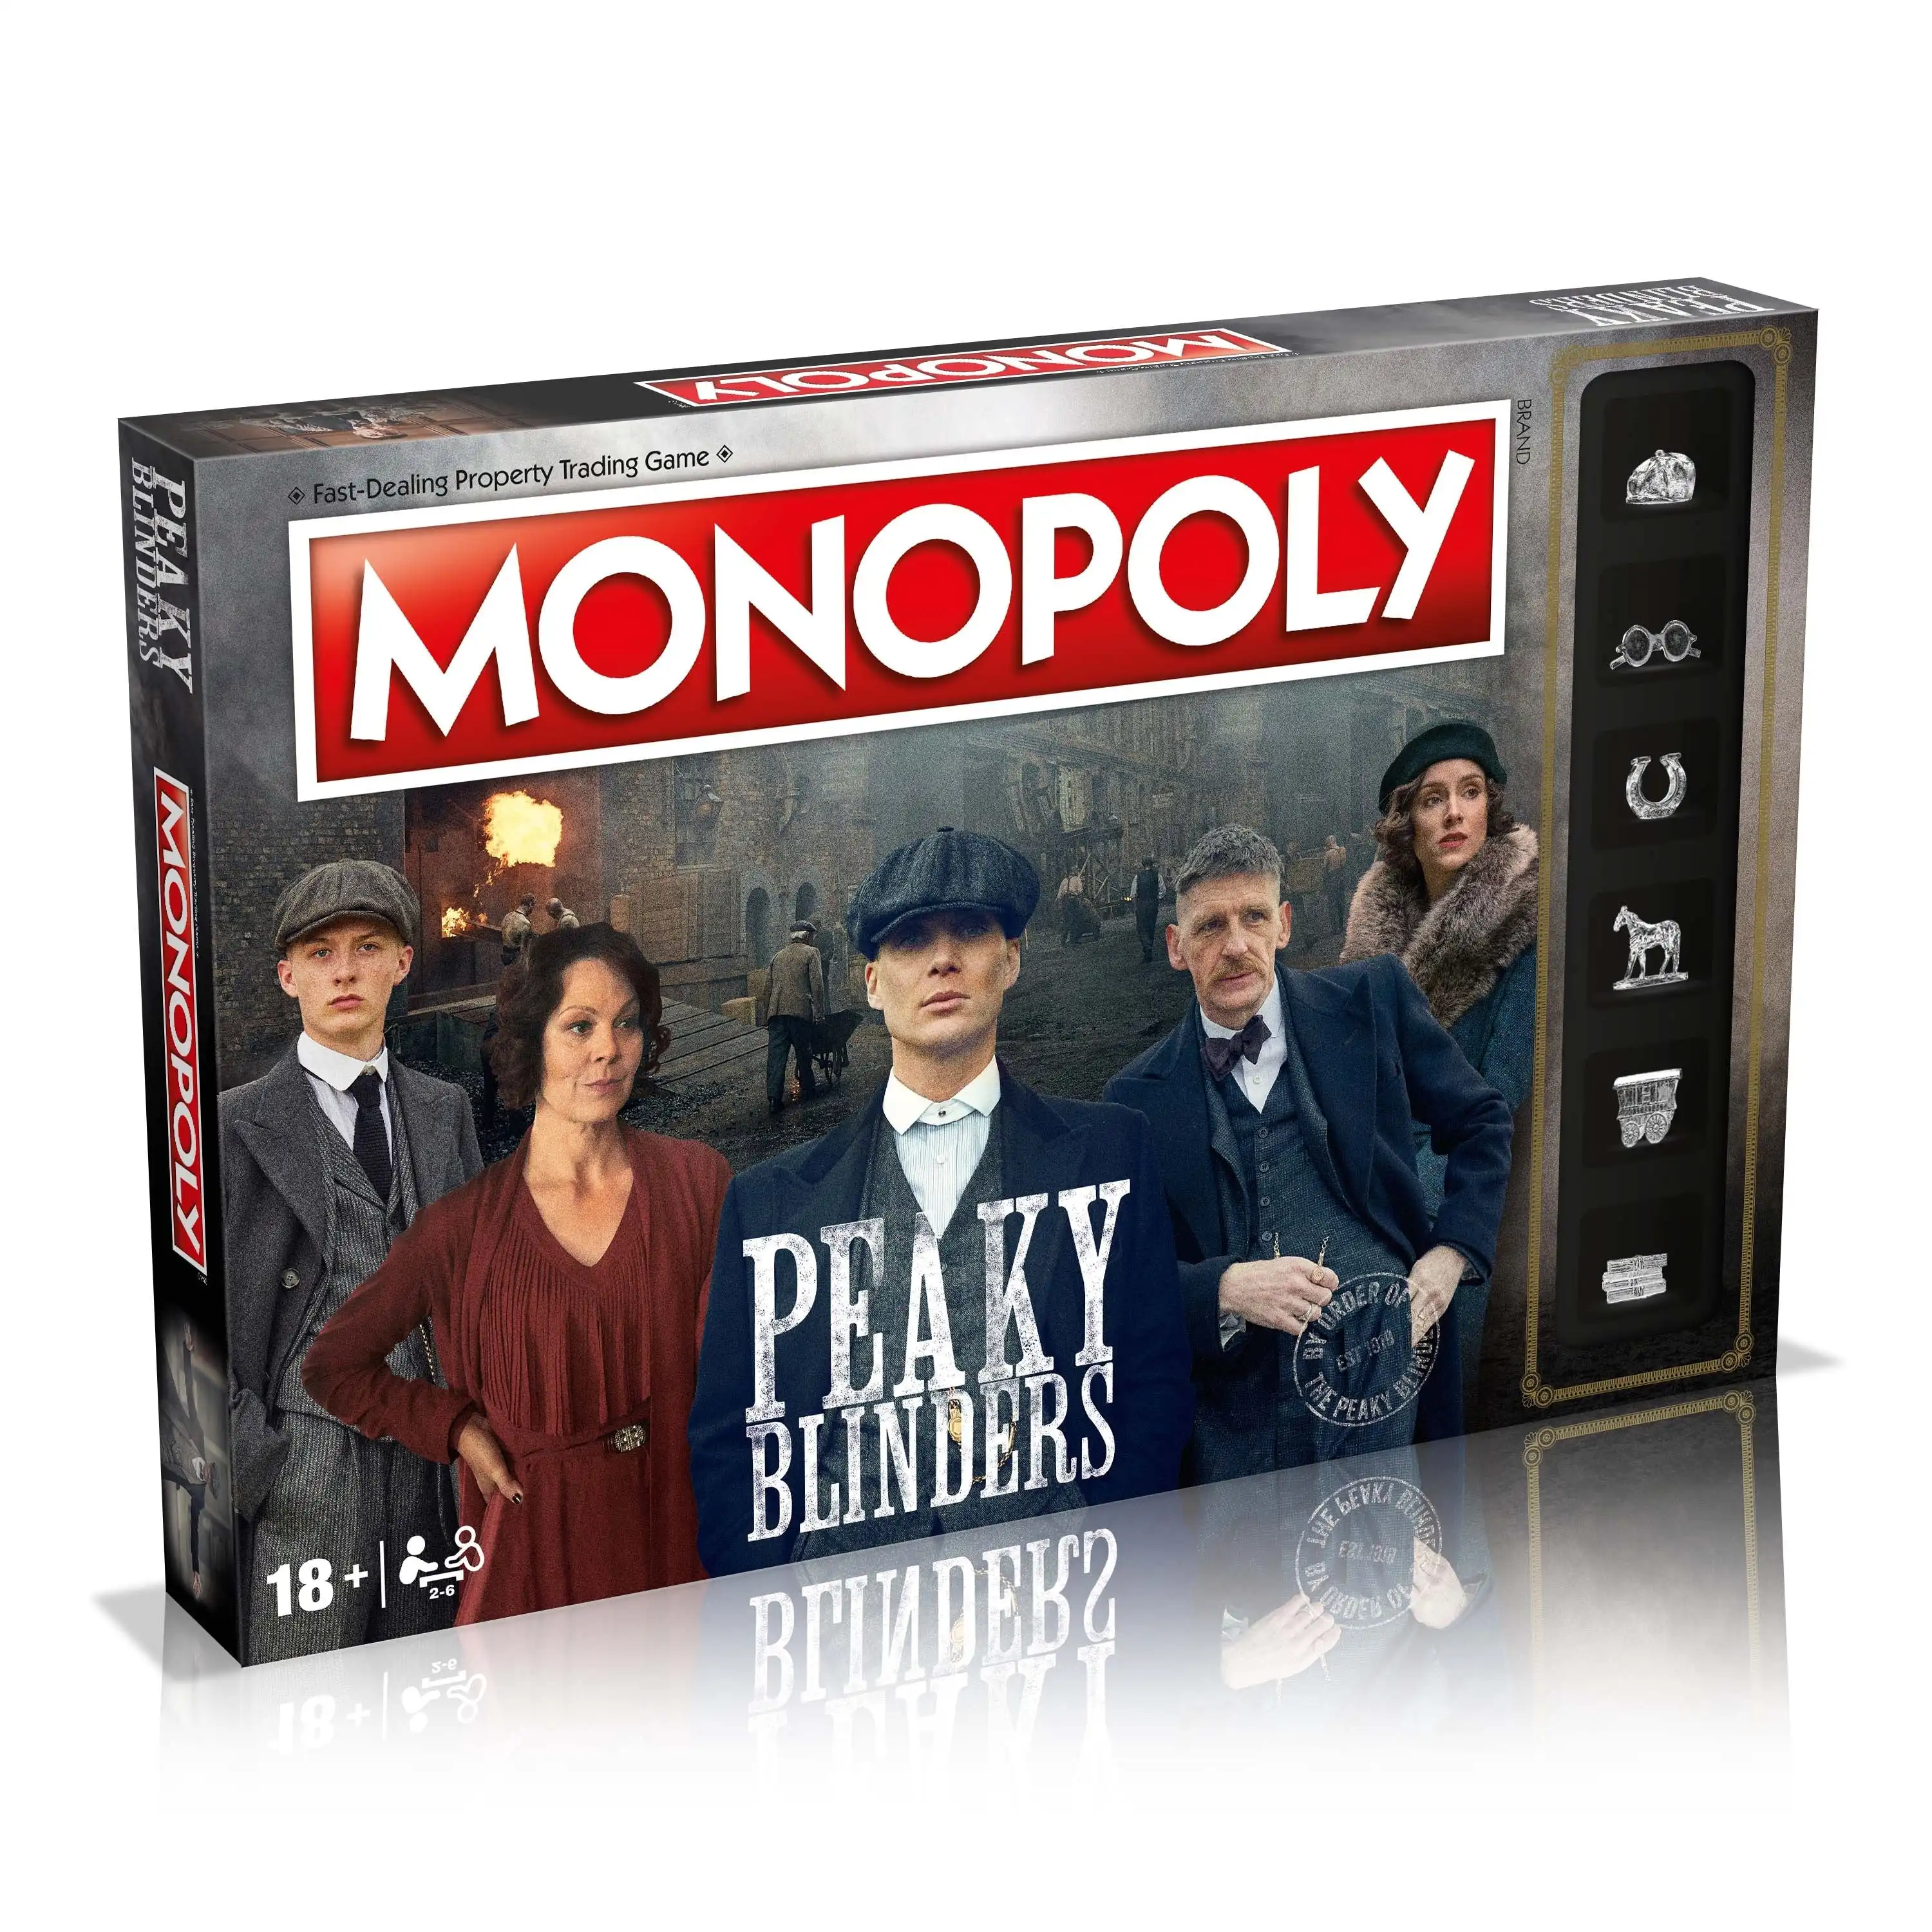 Monopoly, Peaky Blinders